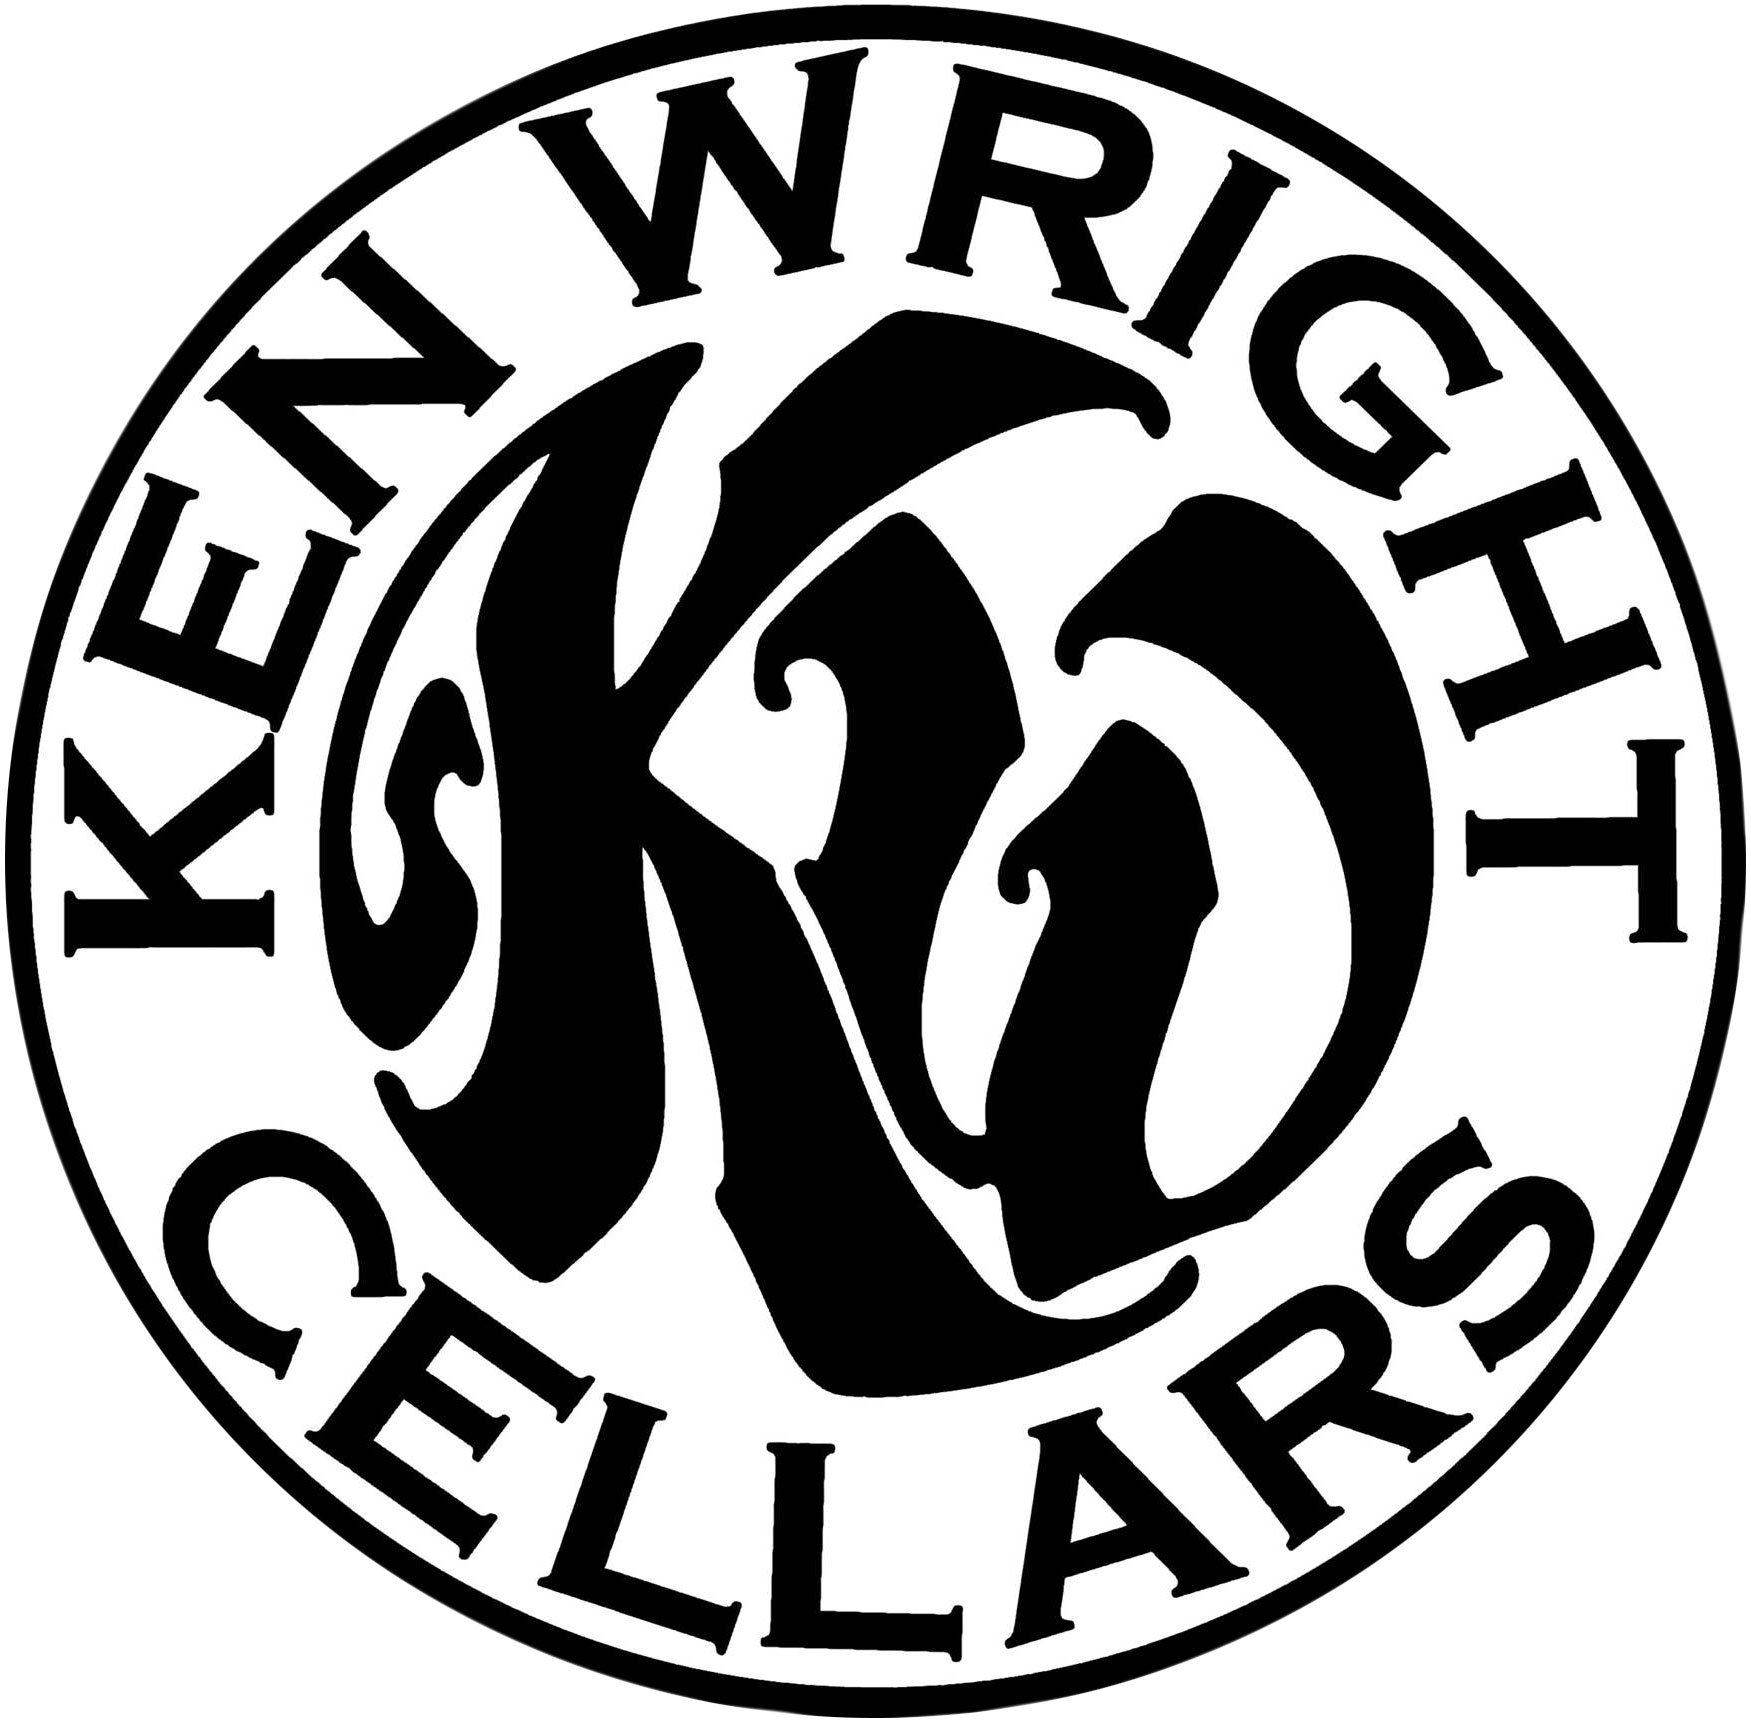 KWC-2012-logo-cropped.jpg